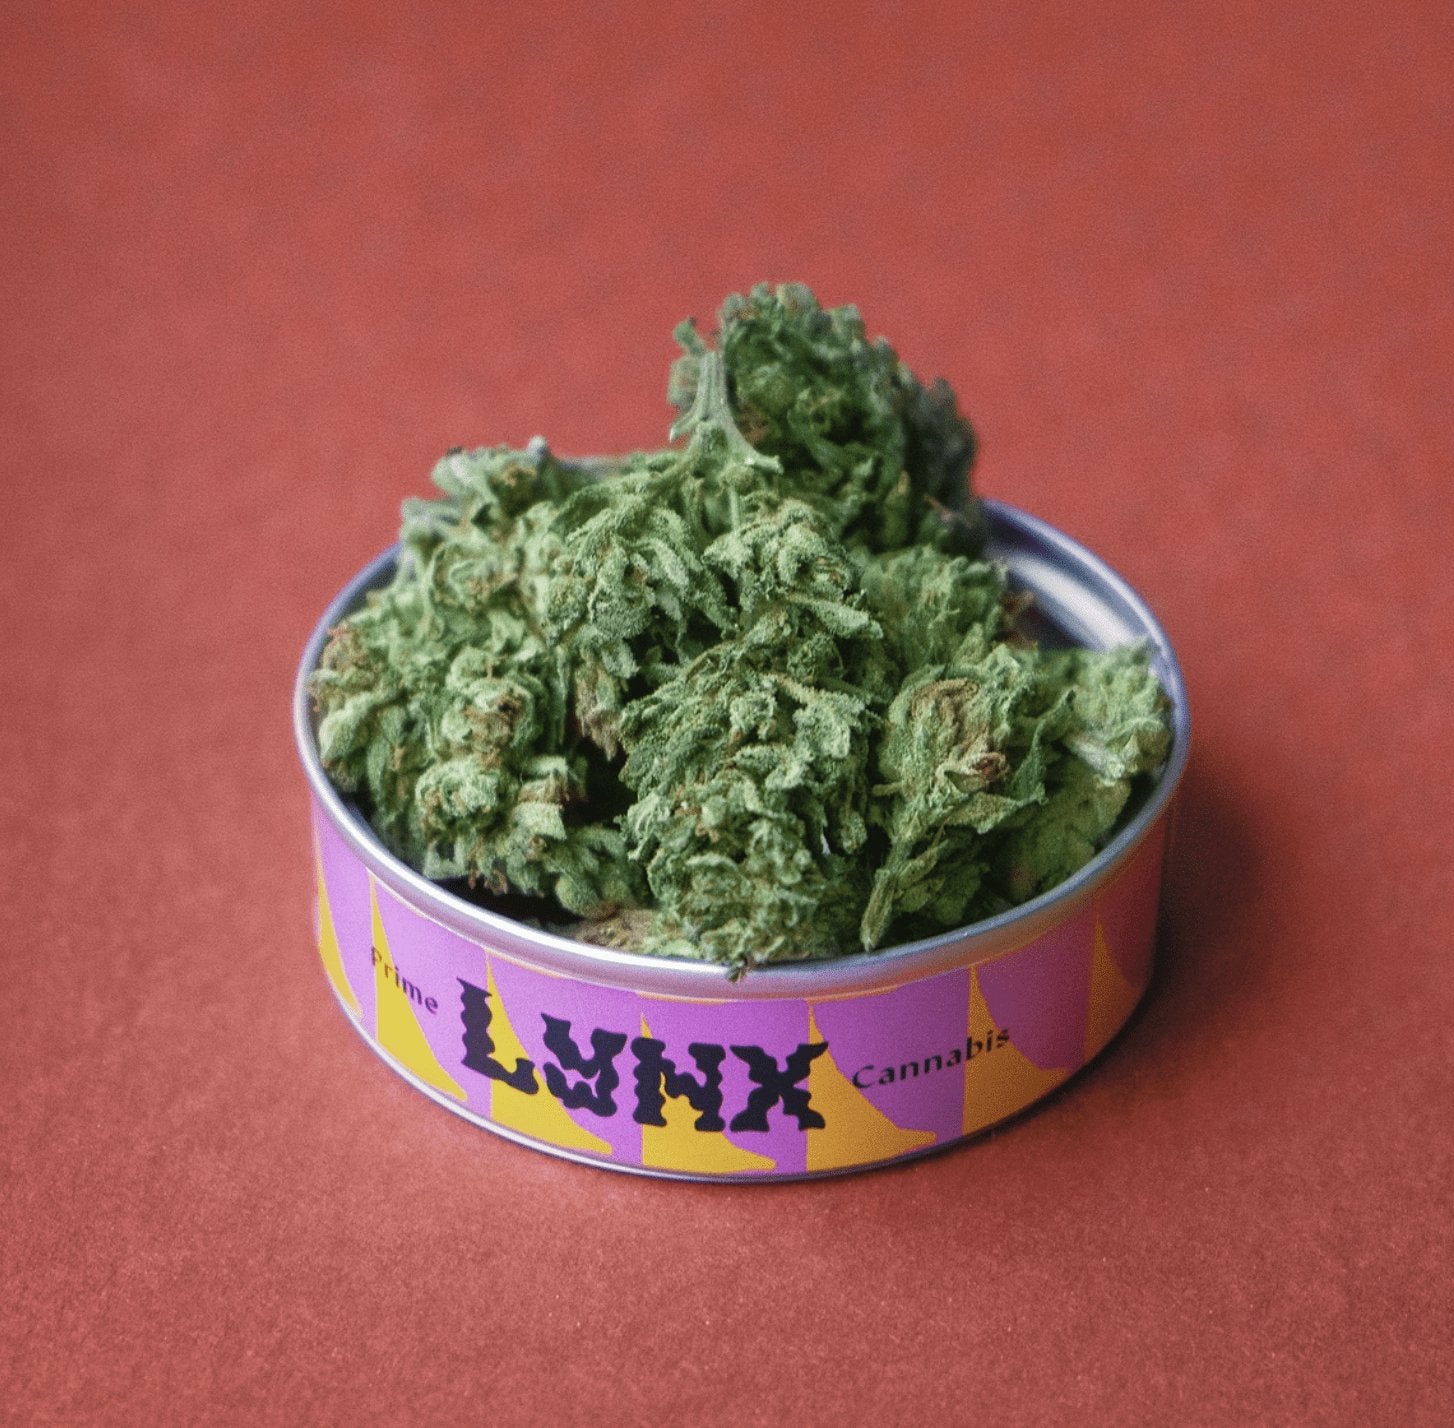 Kanapių žiedai - Lynx Prime - Lynx Cannabis